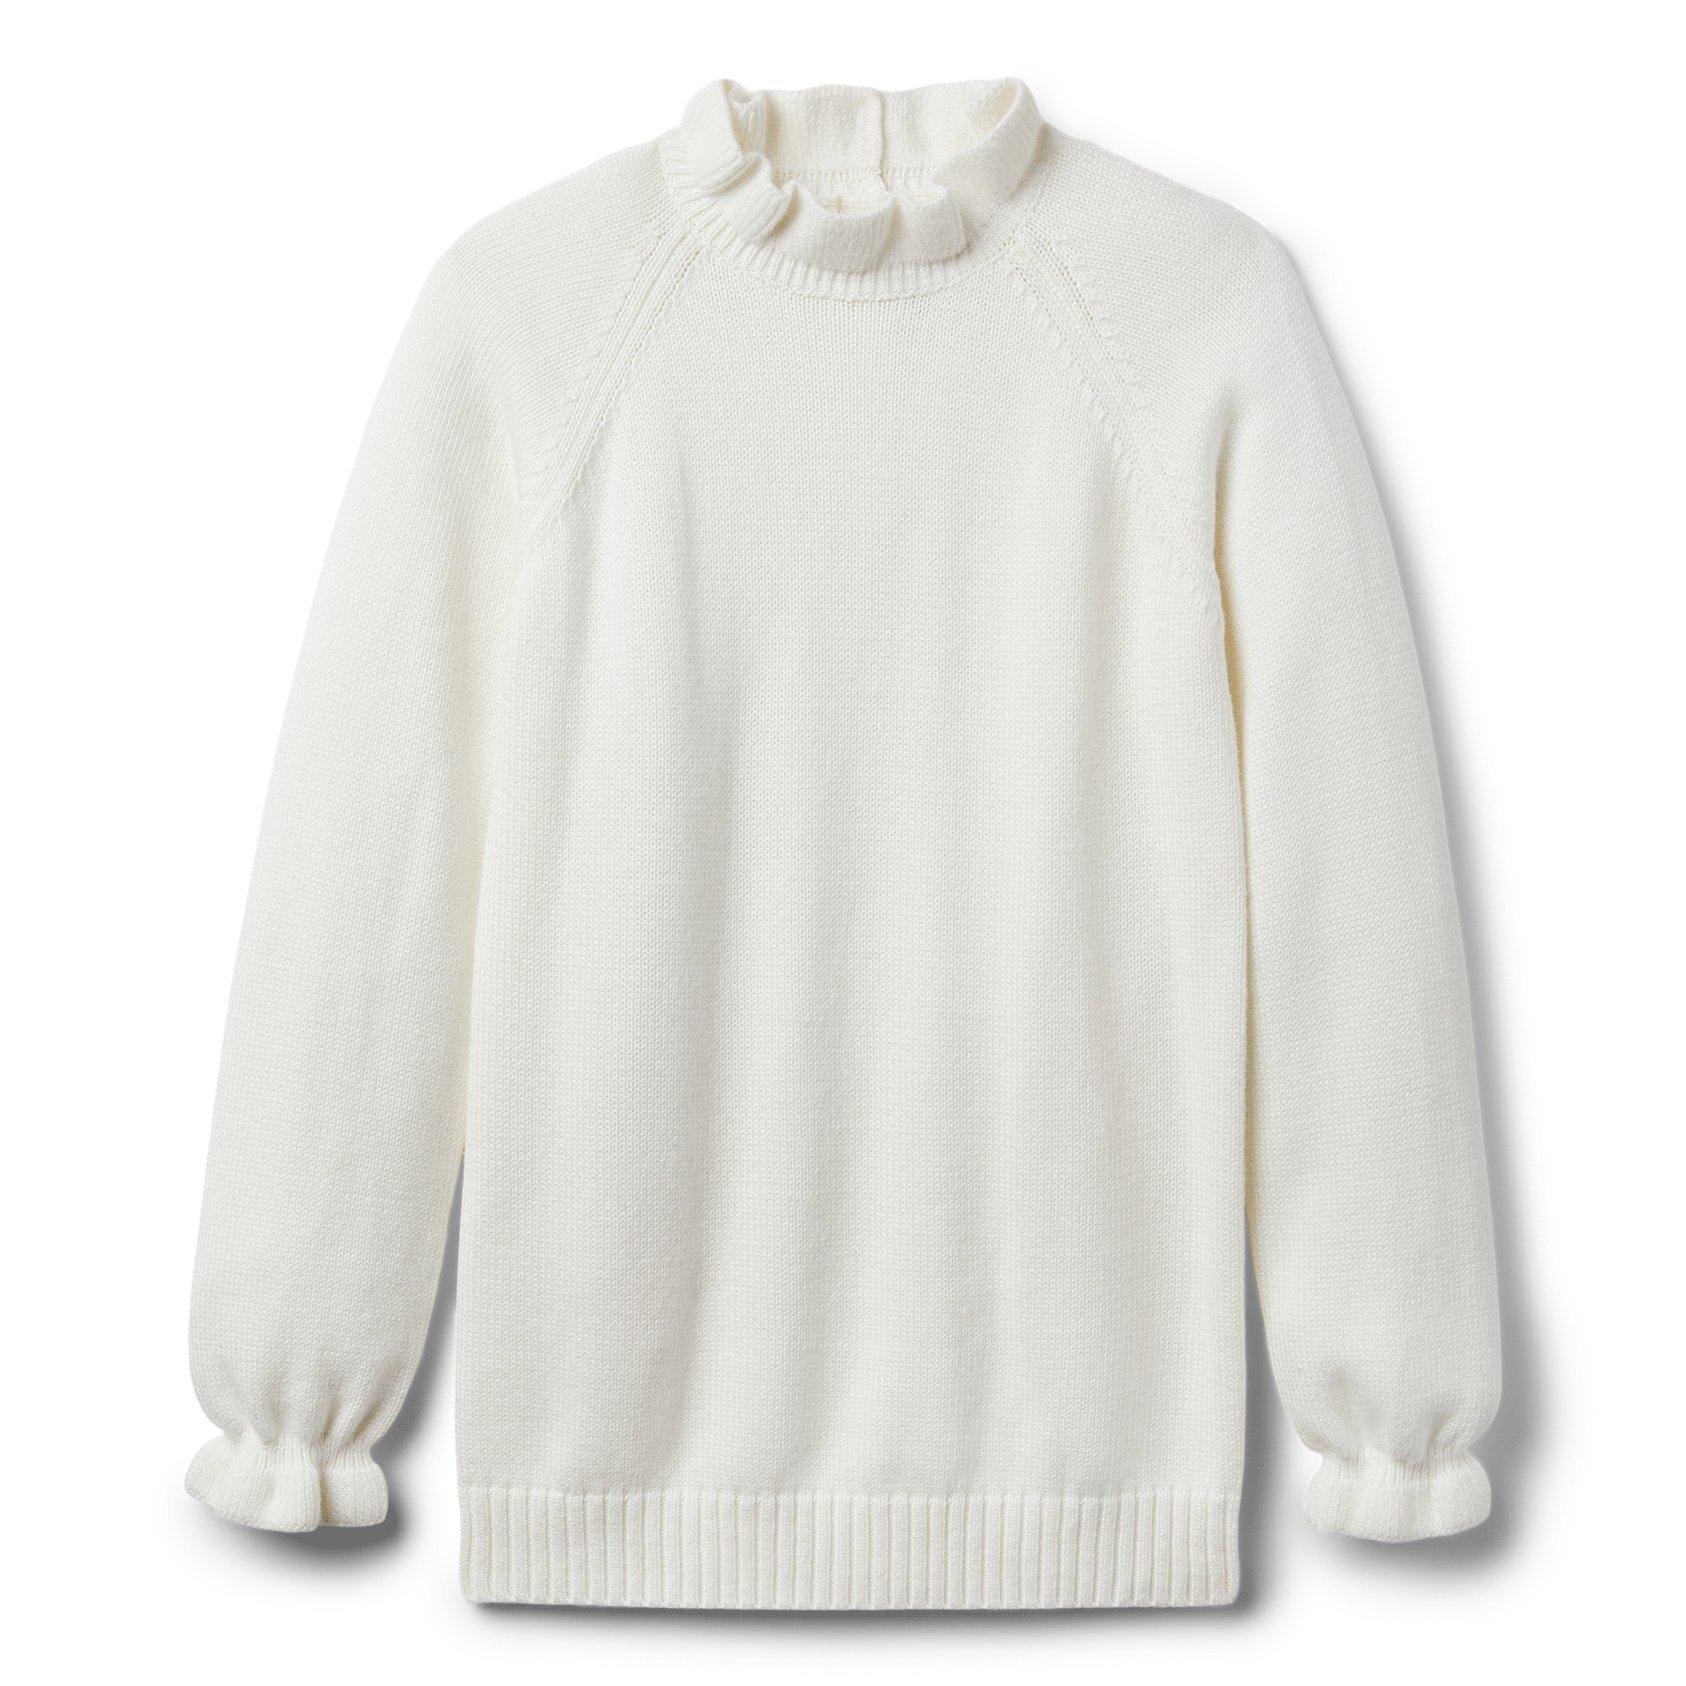 Ruffle Sweater